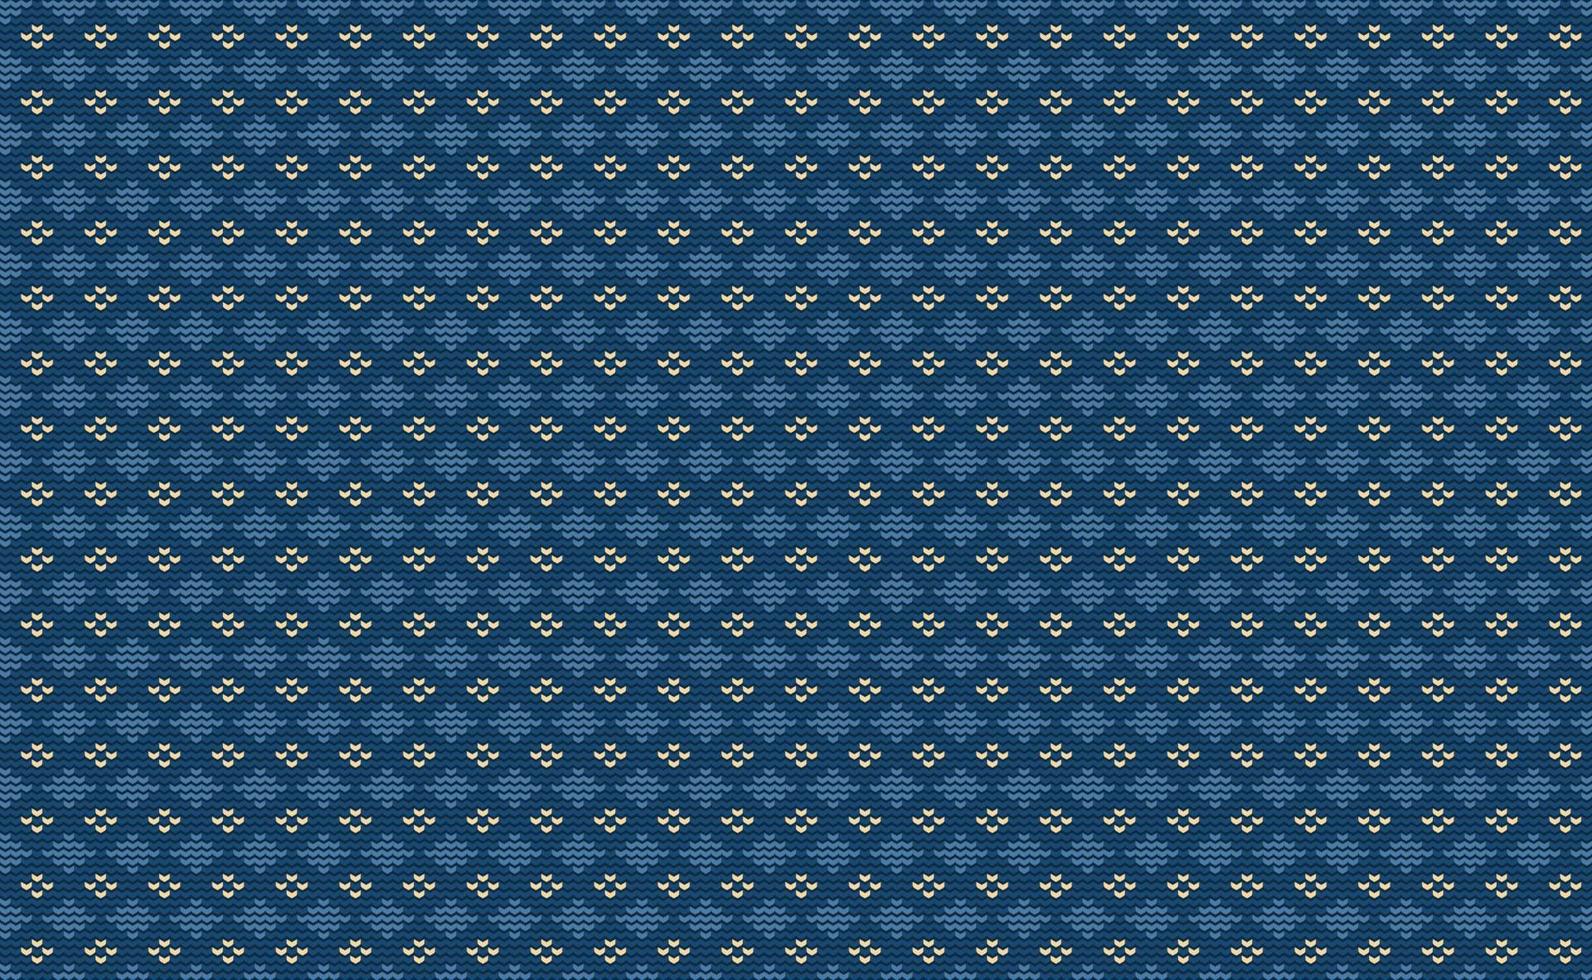 motif de broderie bleu et jaune, fond continu tricoté en losange, vintage de style géométrique vectoriel